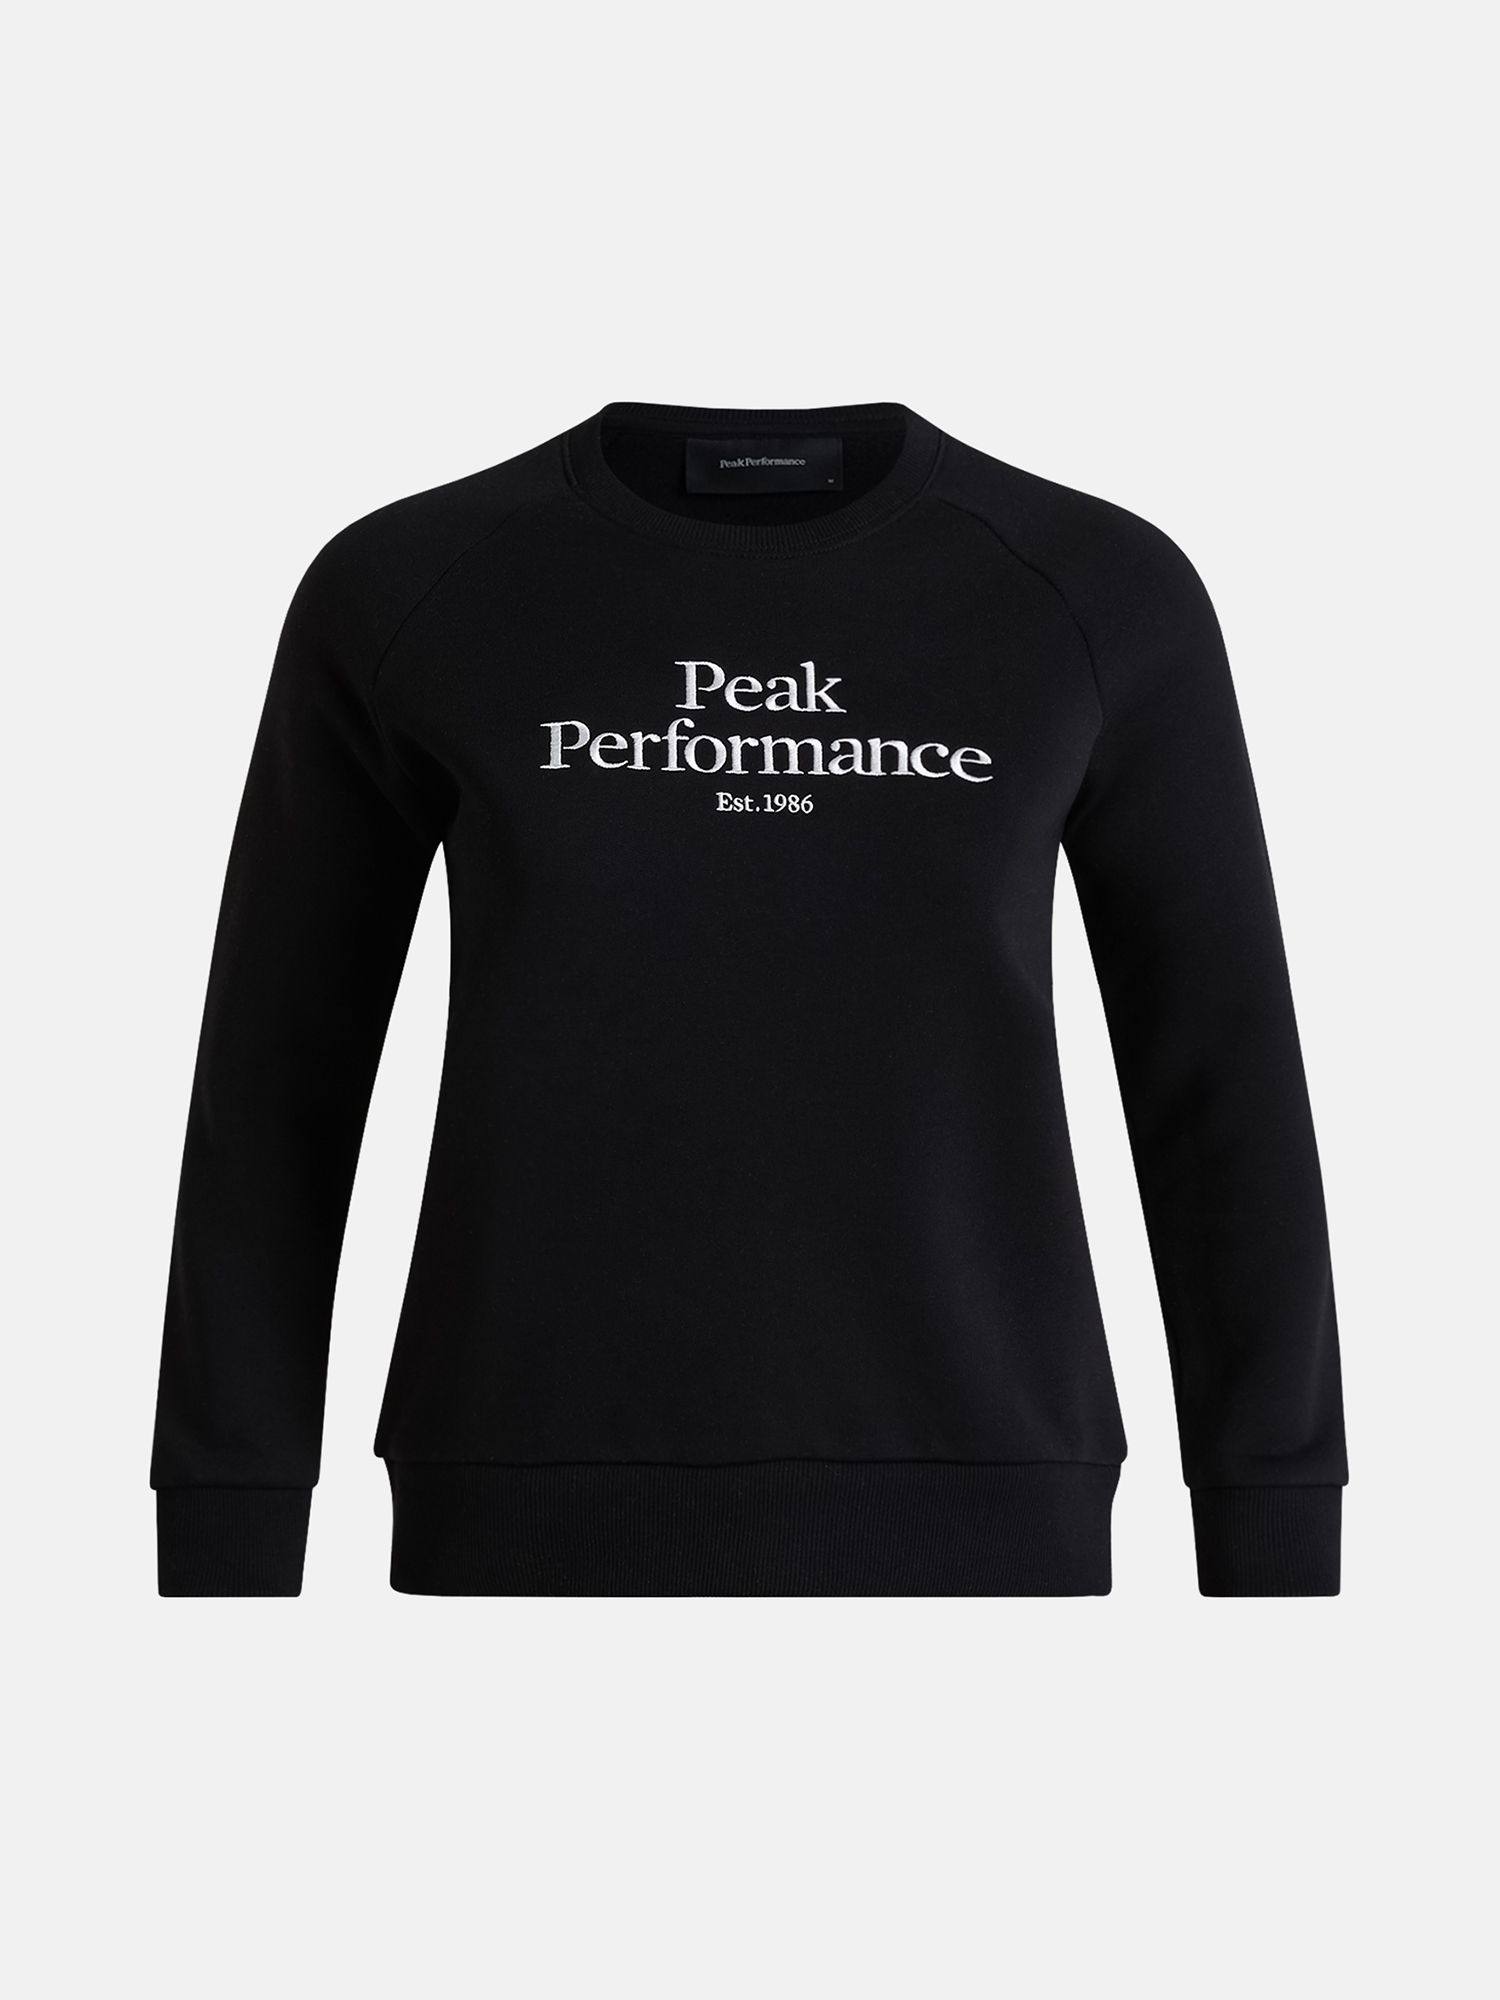 Peak Performance Women’s Original Crew Black S